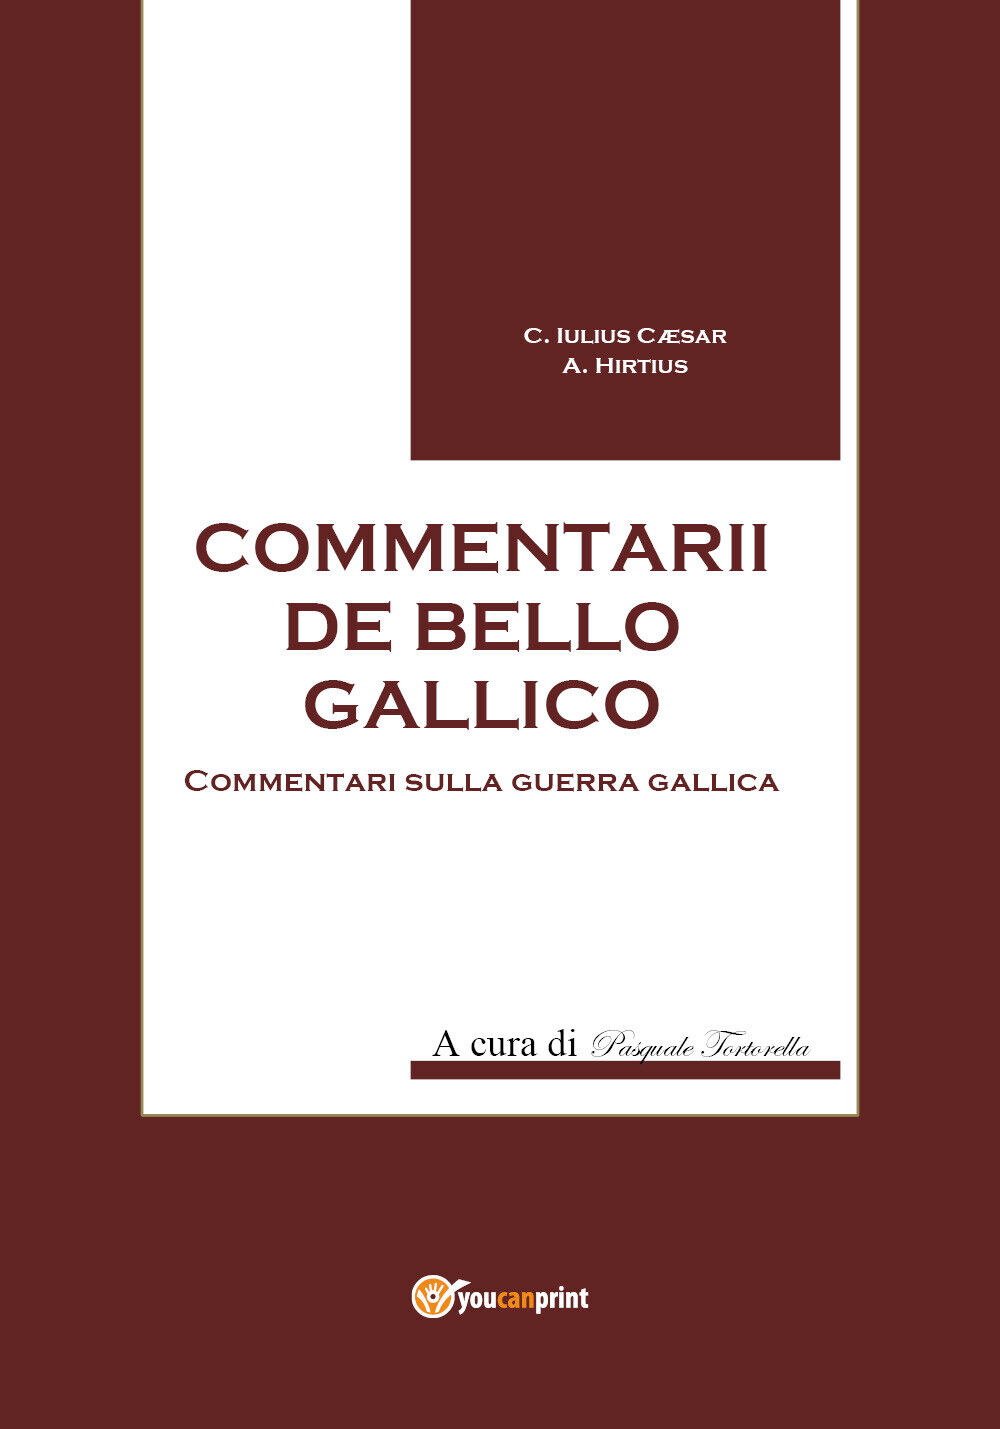 Commentarii de bello Gallico - di Gaio Giulio Cesare, P. Tortorella,  2017